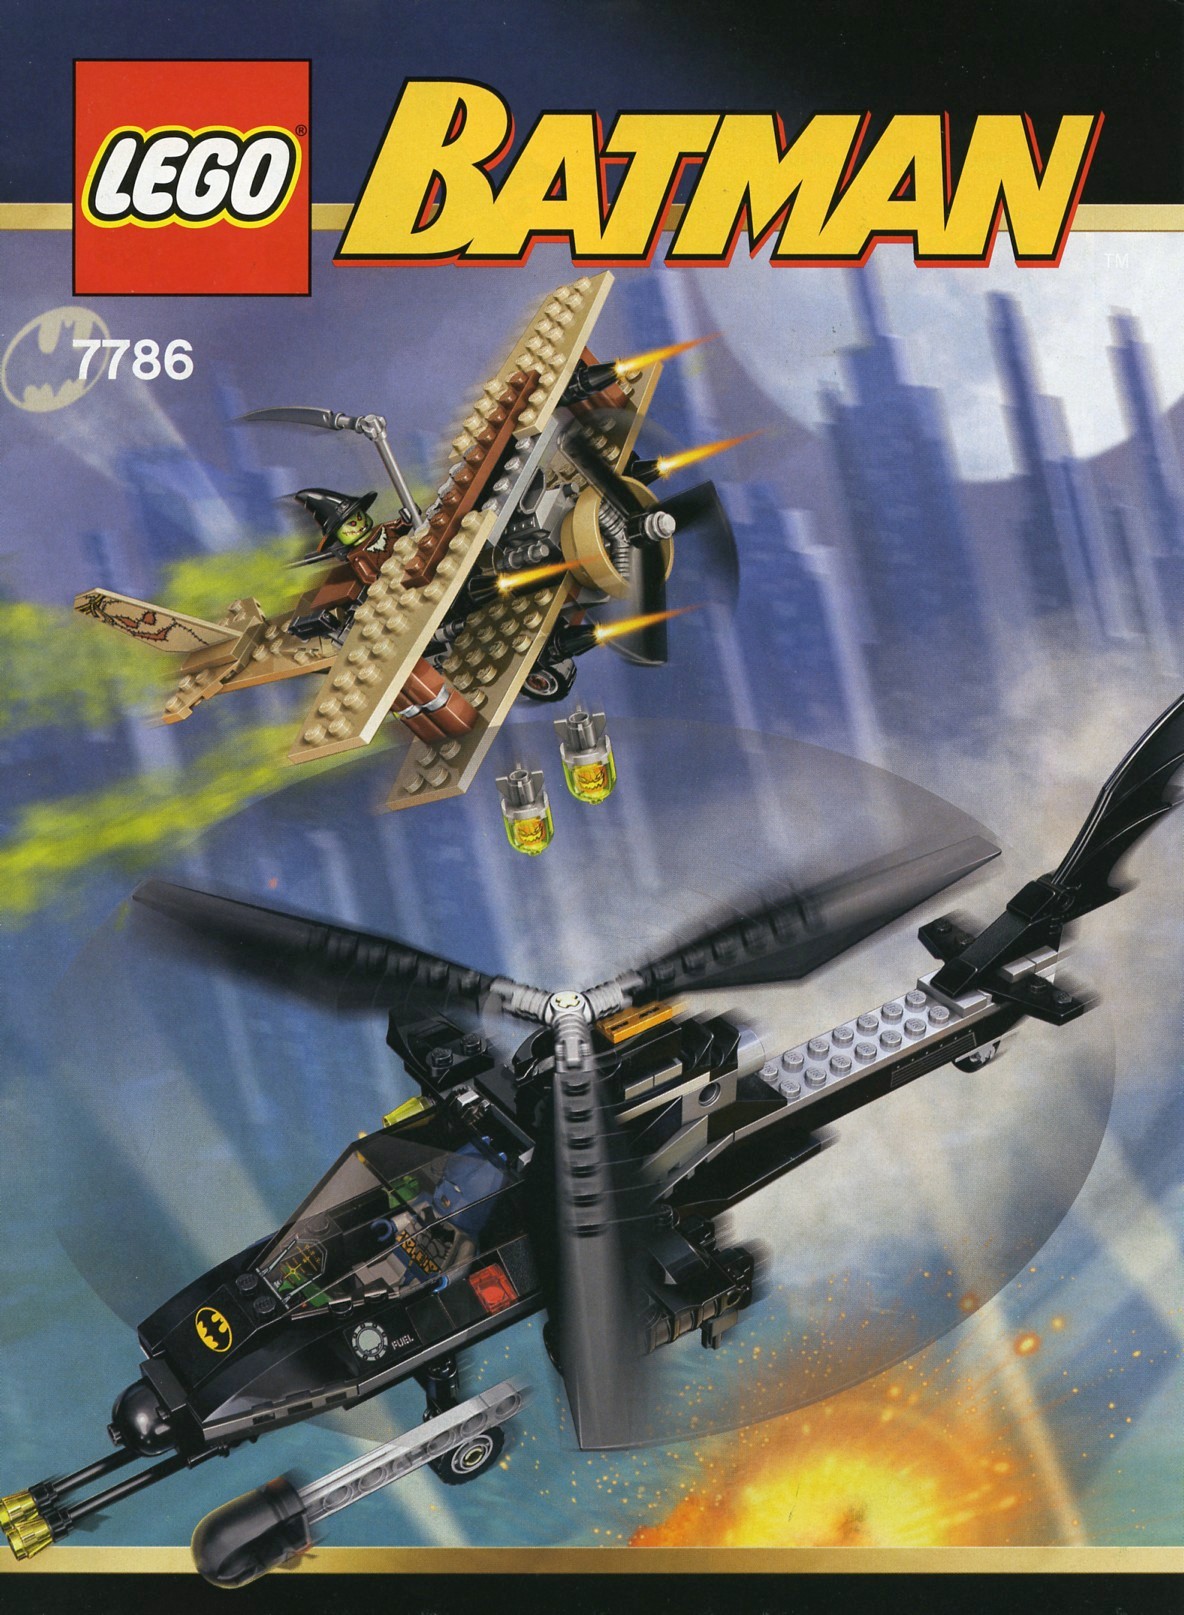 Batman | Brickset: LEGO set guide and database